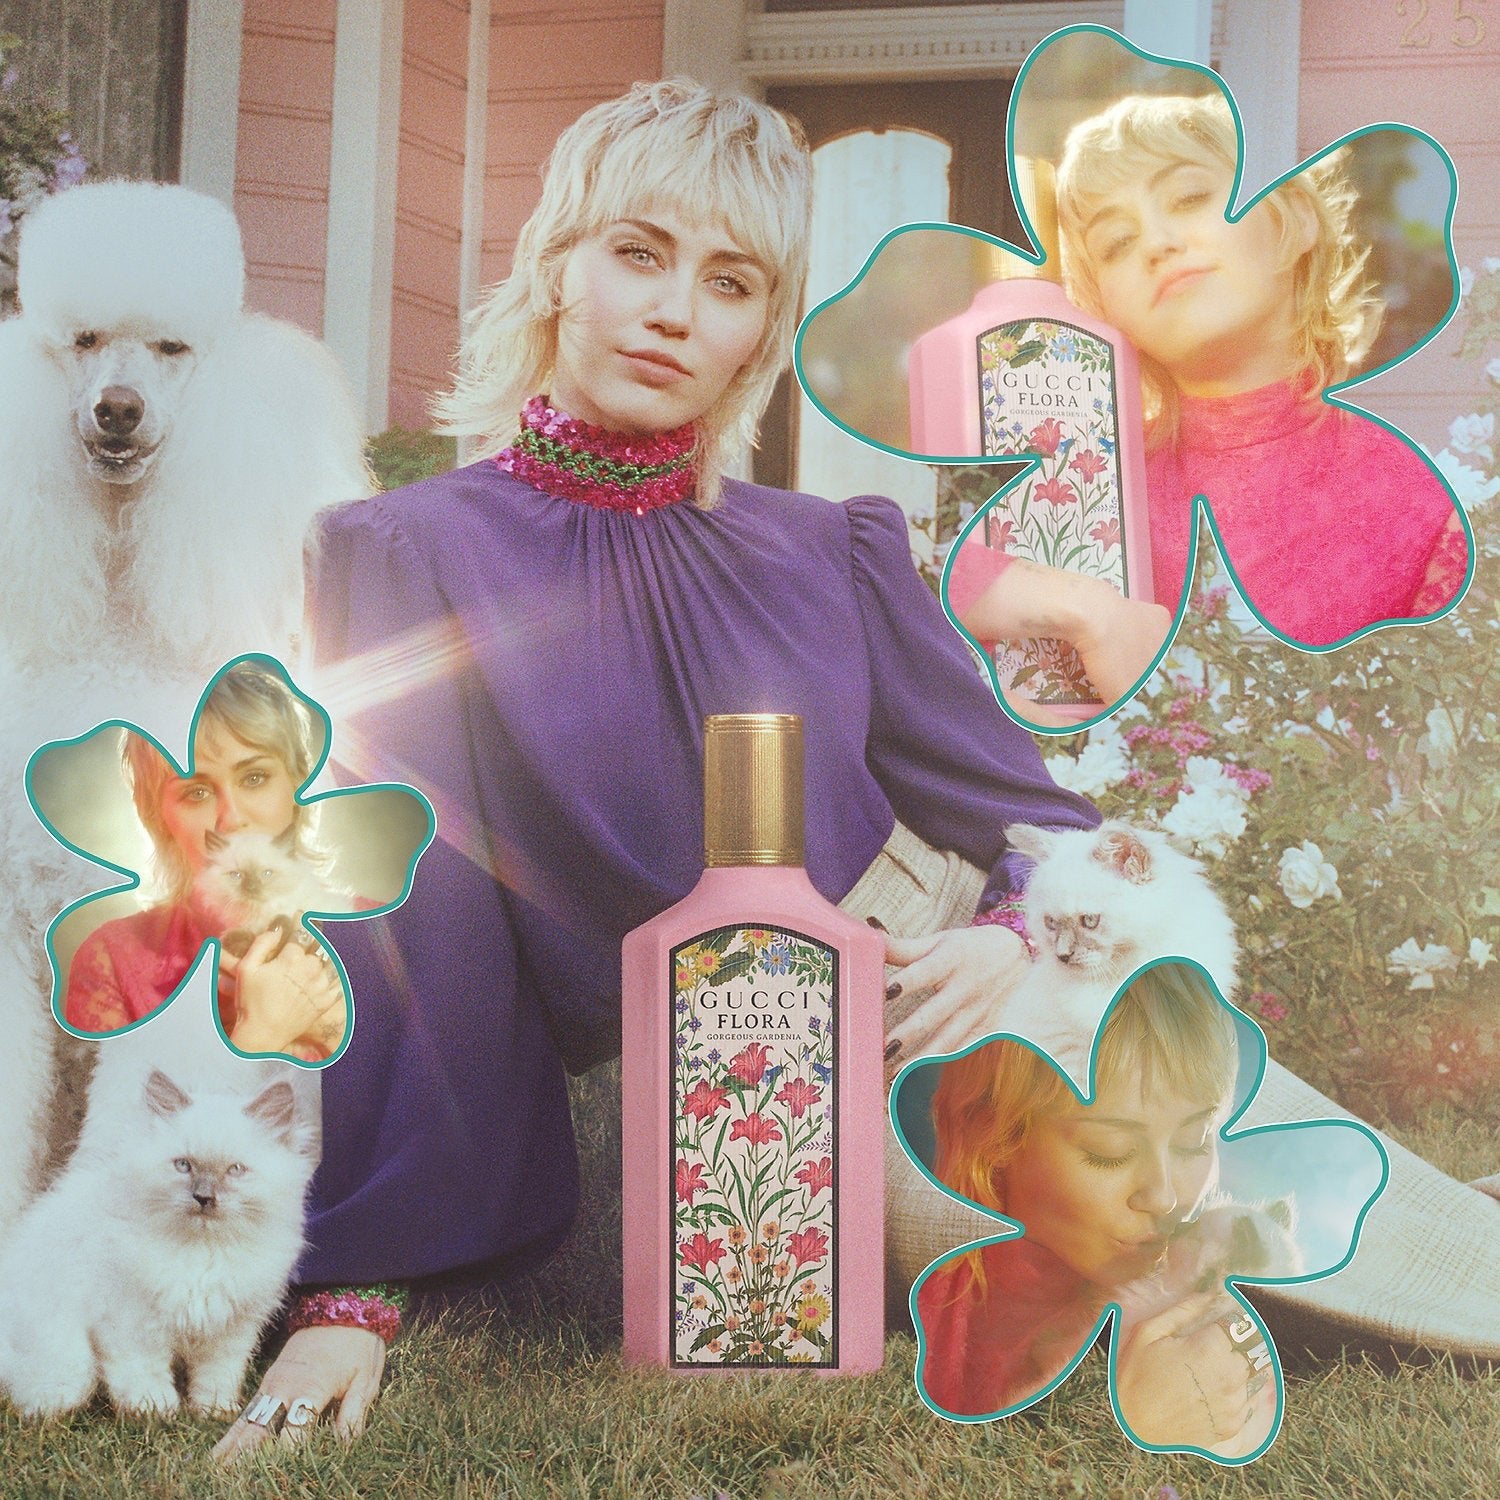 Gucci Flora Gorgeous Gardenia EDP | My Perfume Shop Australia